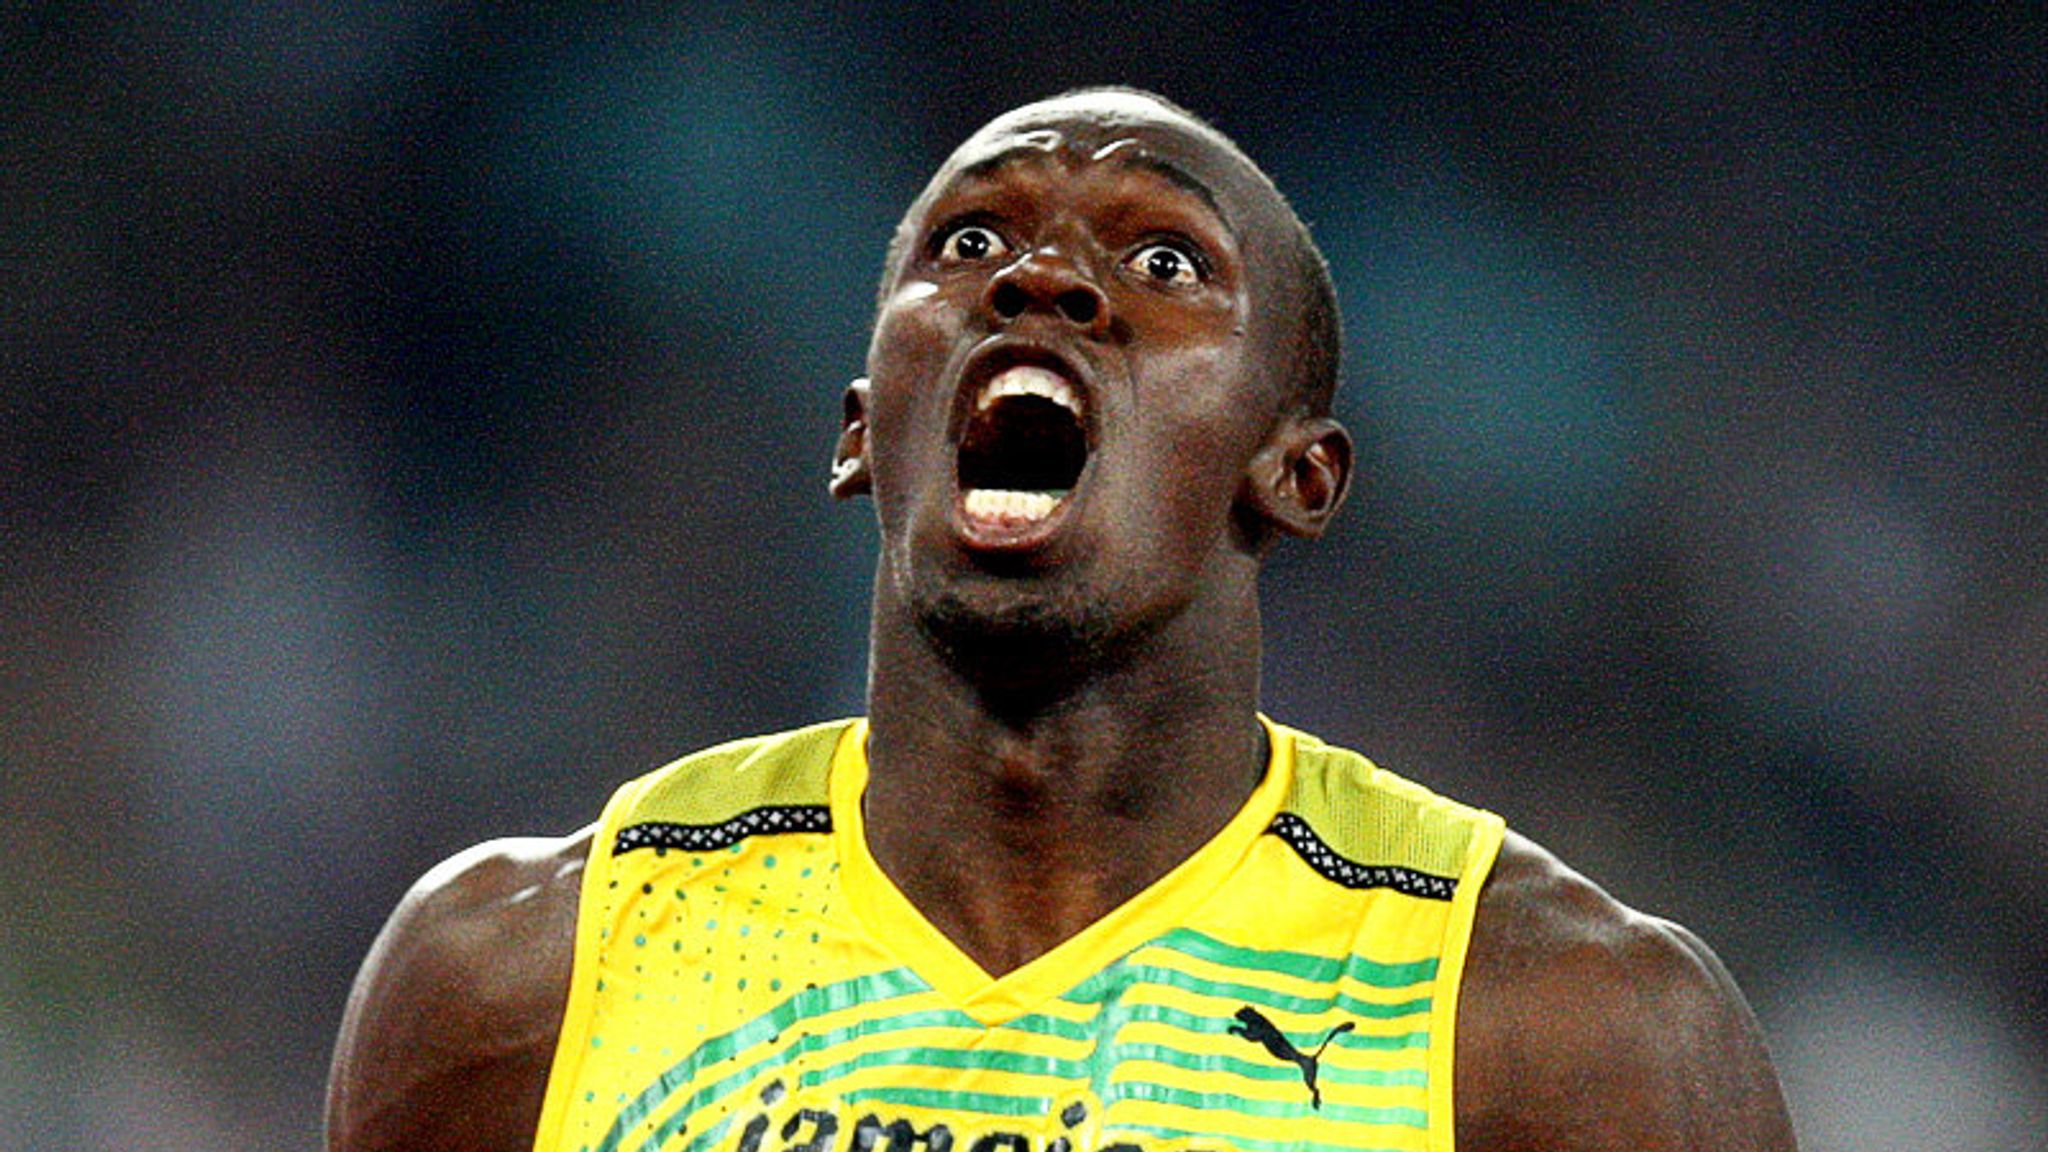 Usain Bolt the world's greatest sprinter